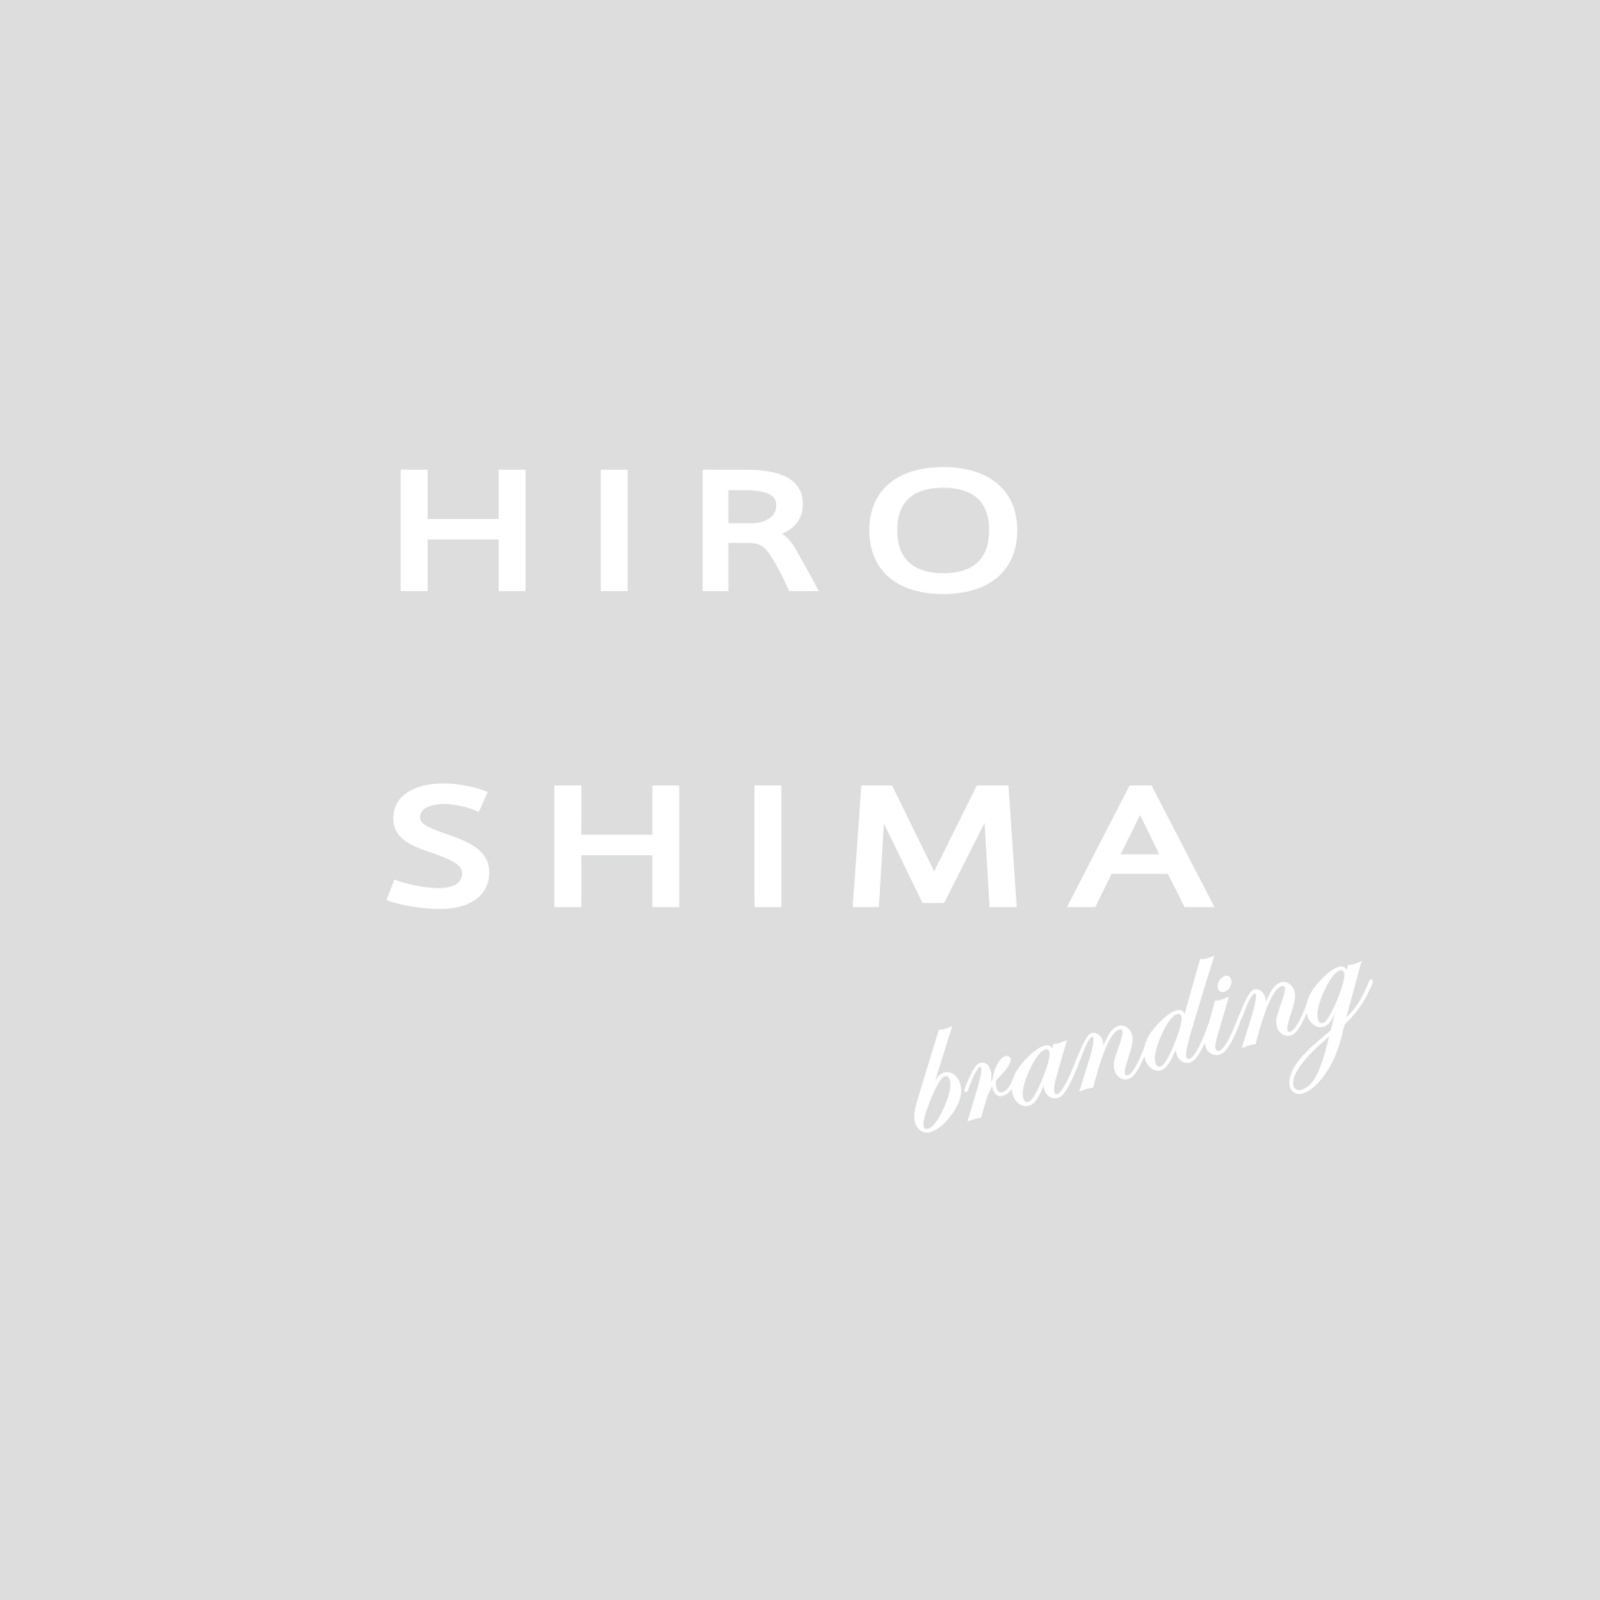 『広島のブランディングを考える』価値を高めるロゴ、デザインの意識と工夫